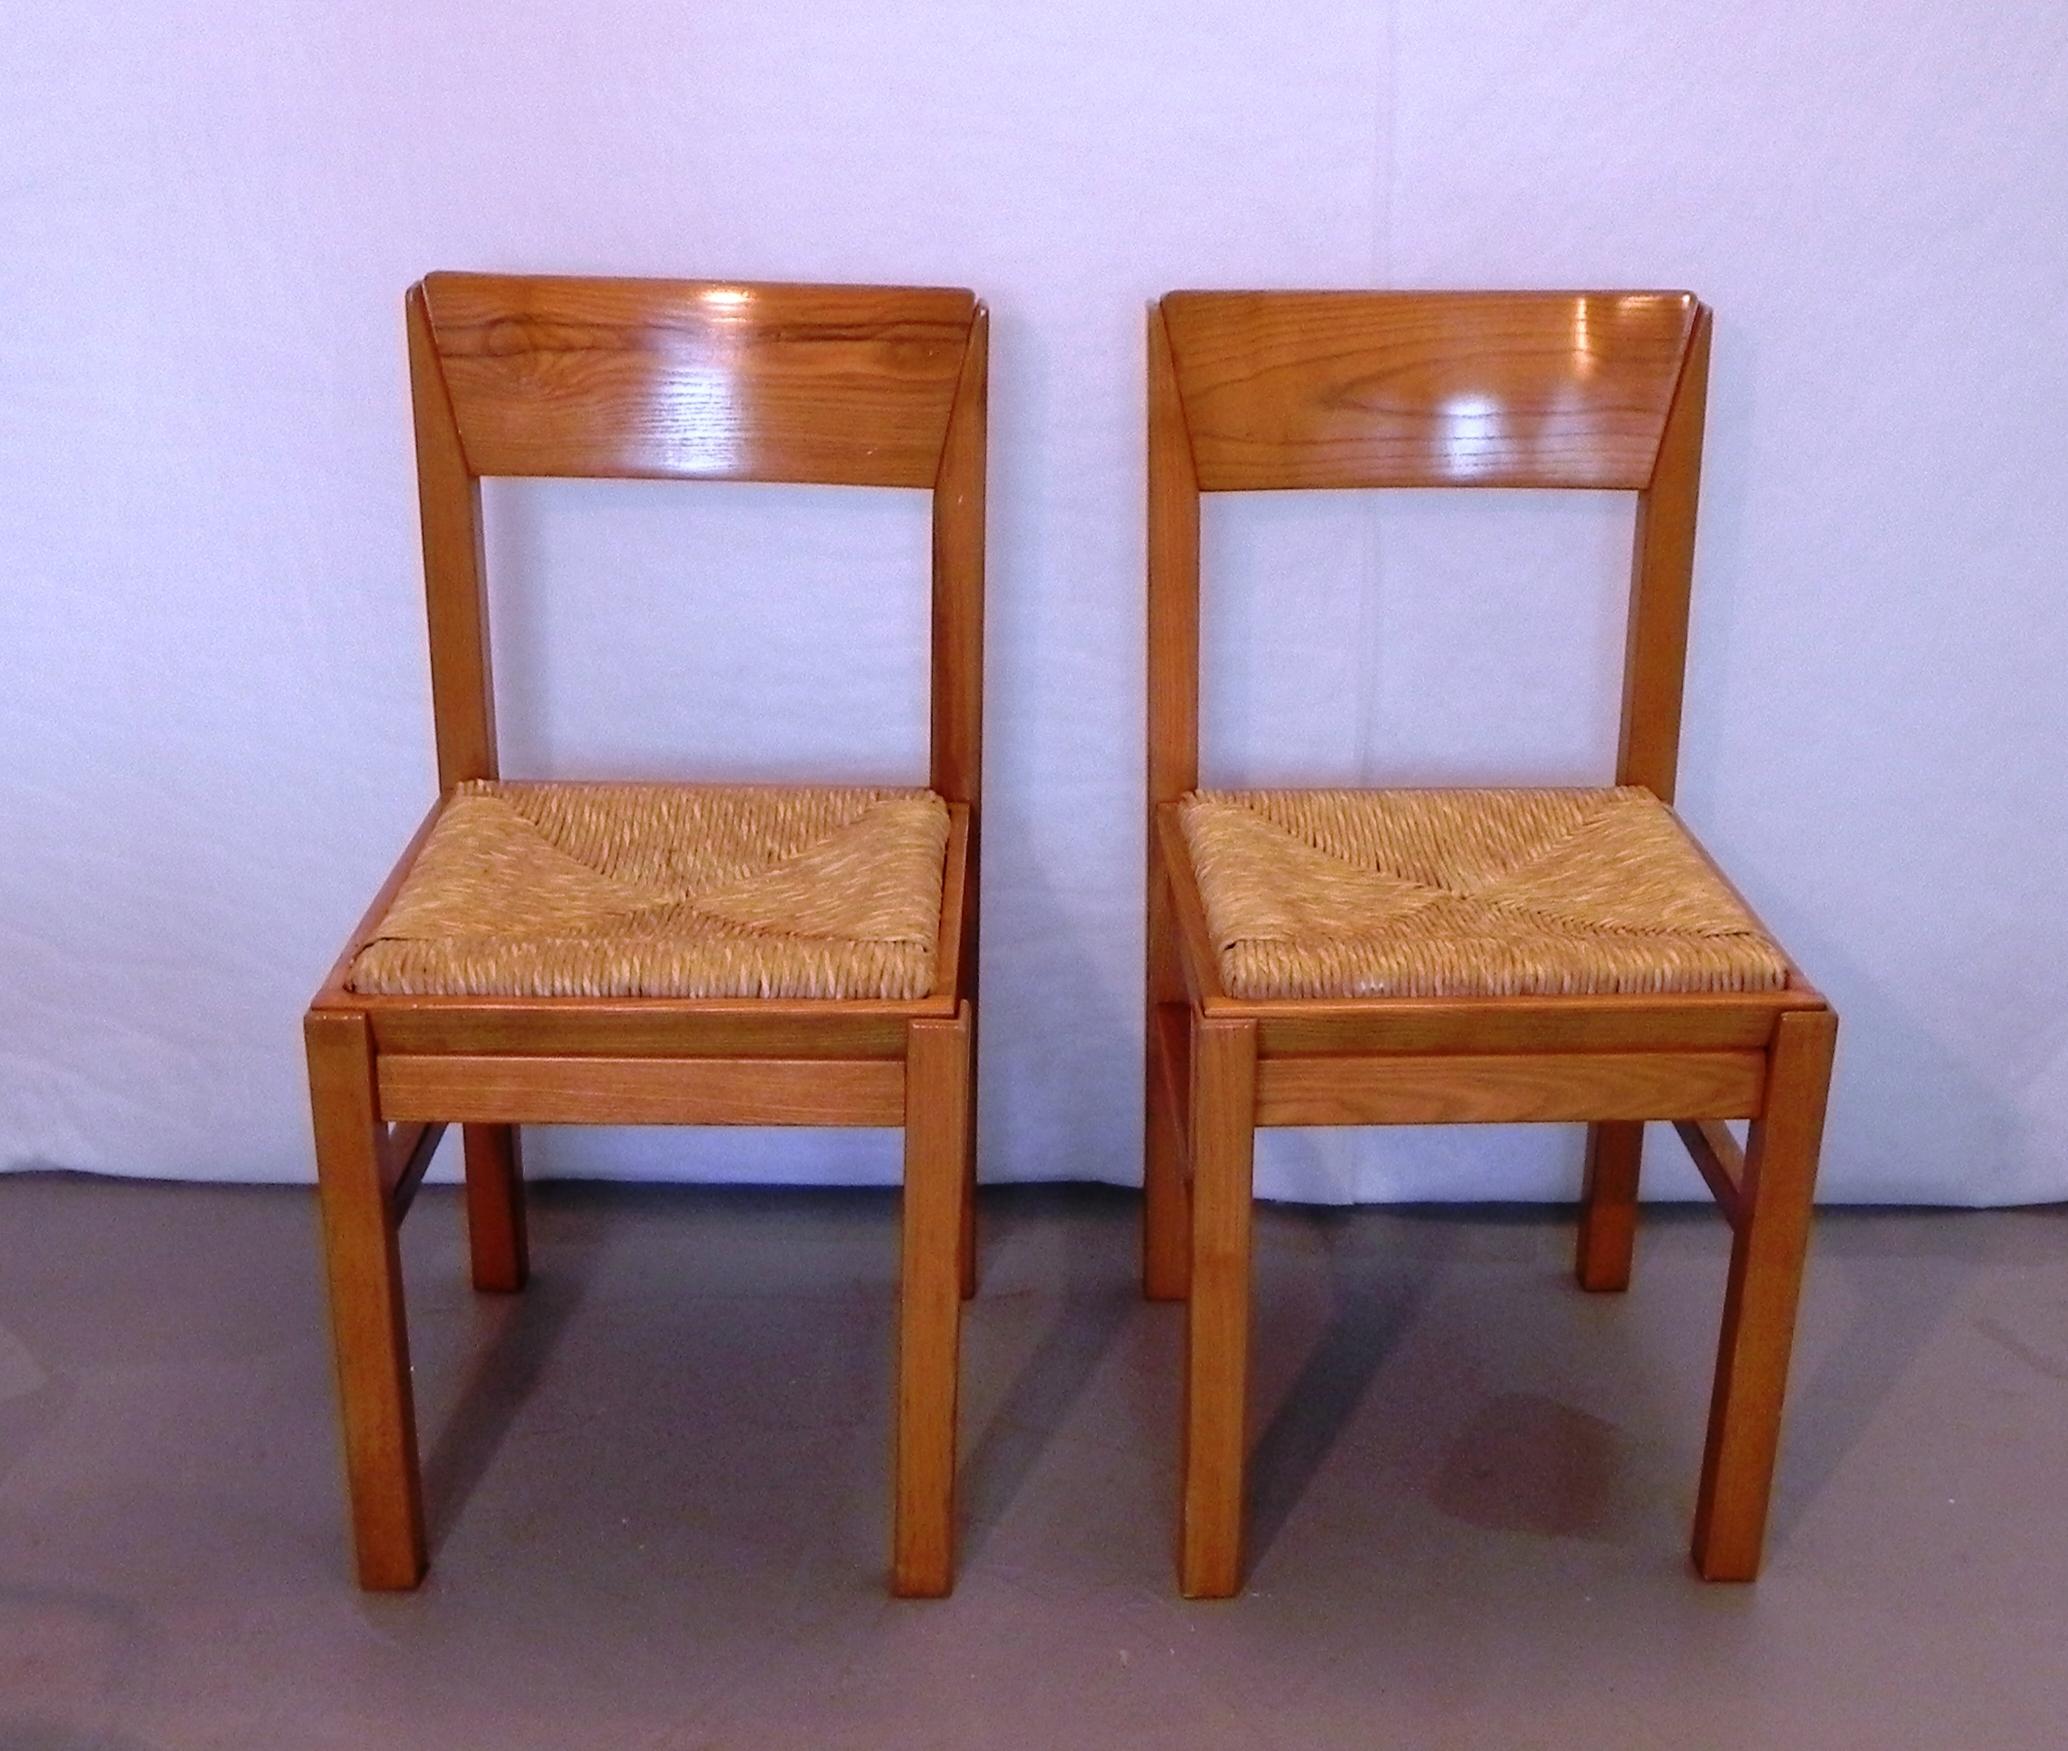 2 Sedie da cucina anni 80, di Arclinea, in legno di tiglio massiccio. particolarmente curate negli incastri e nelle finiture, con sagomature inedite. Fanno parte di una serie di sedie per tavolo da cucina. Il fusto è ben tenuto, la rafia mostra i